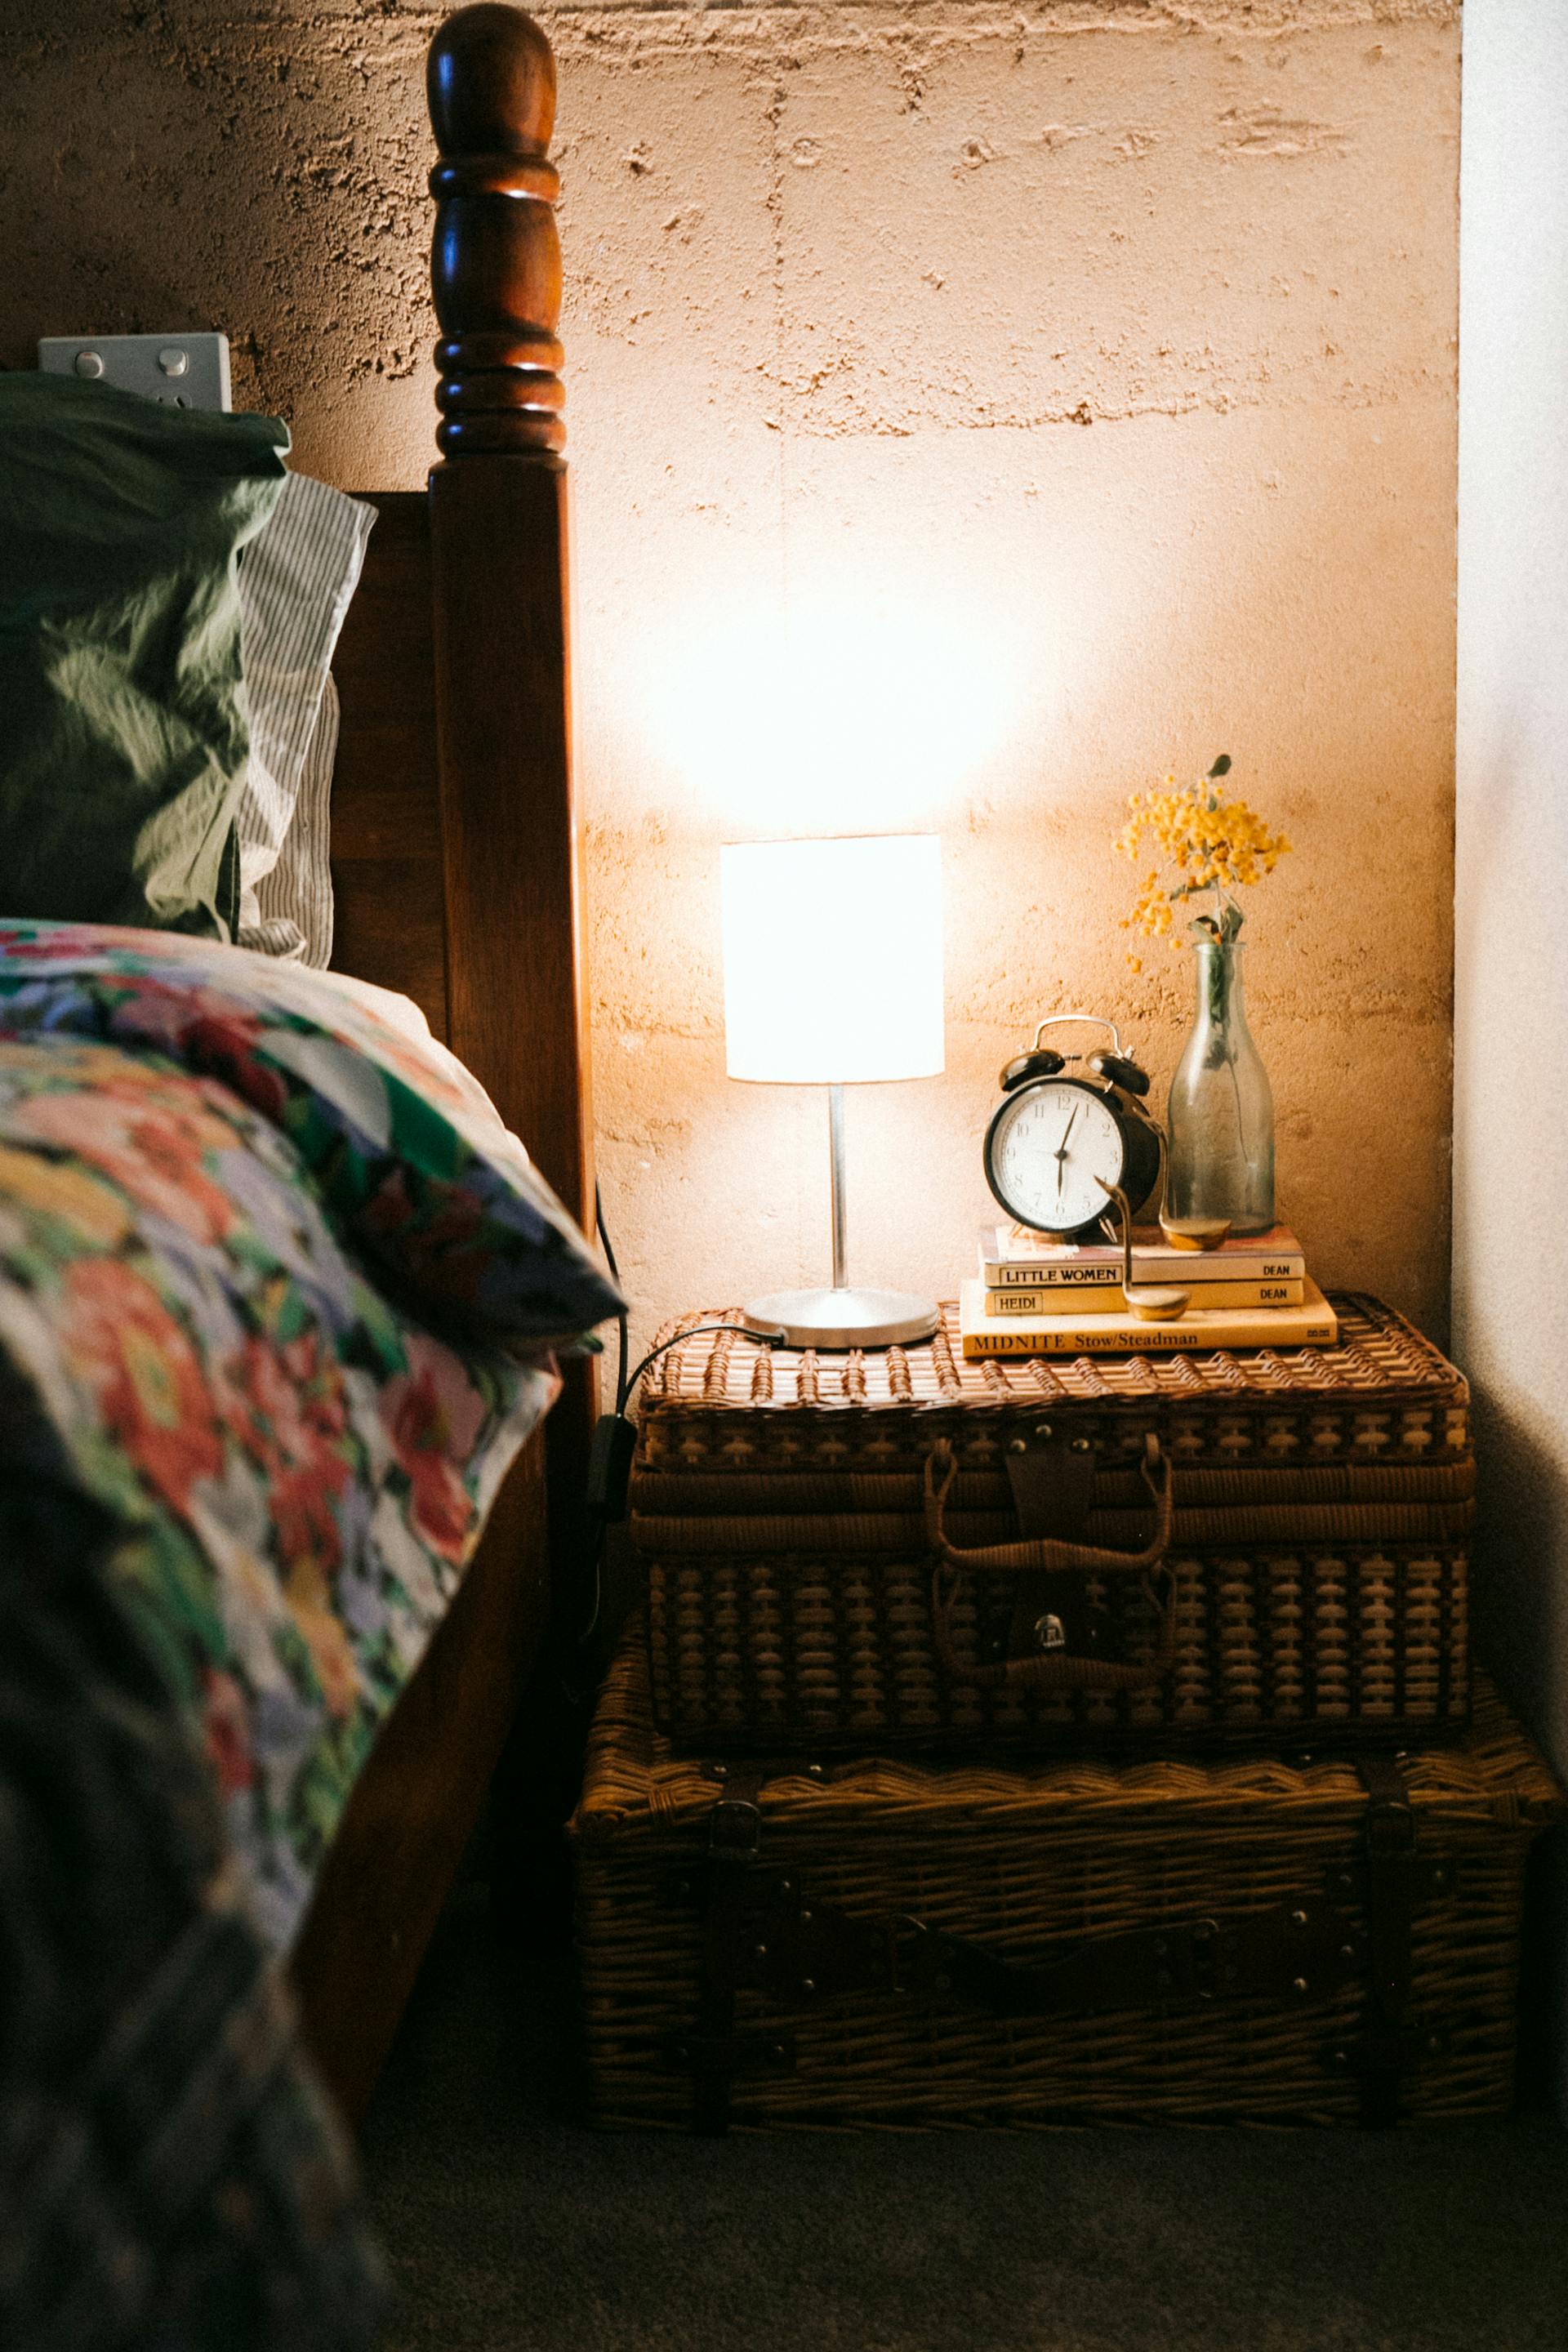 Chambre à coucher avec lampe de chevet sur | Source : Pexels